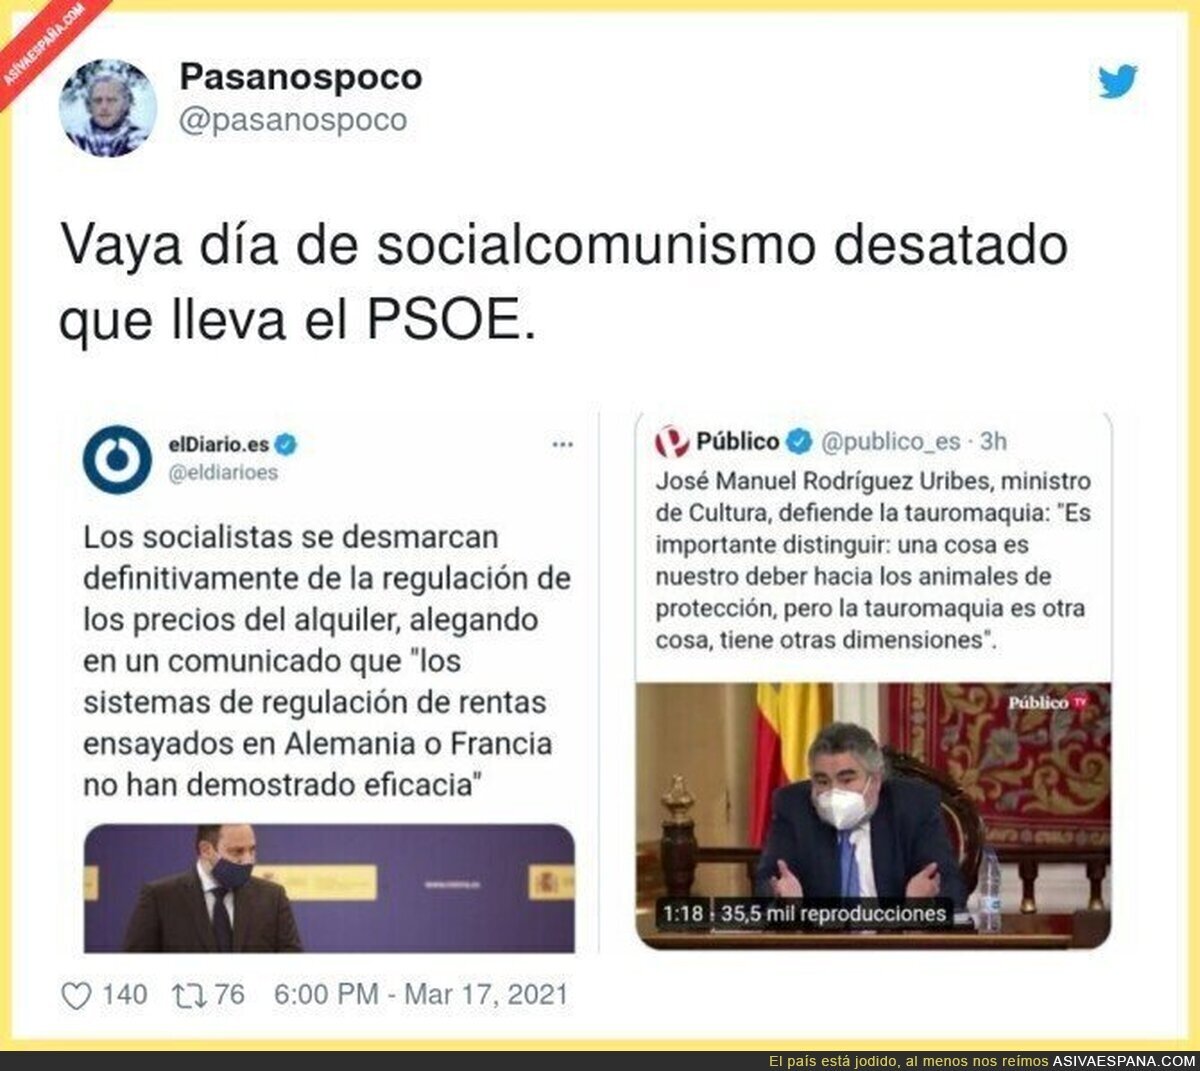 Que complicado es apoyar al PSOE desde hace años